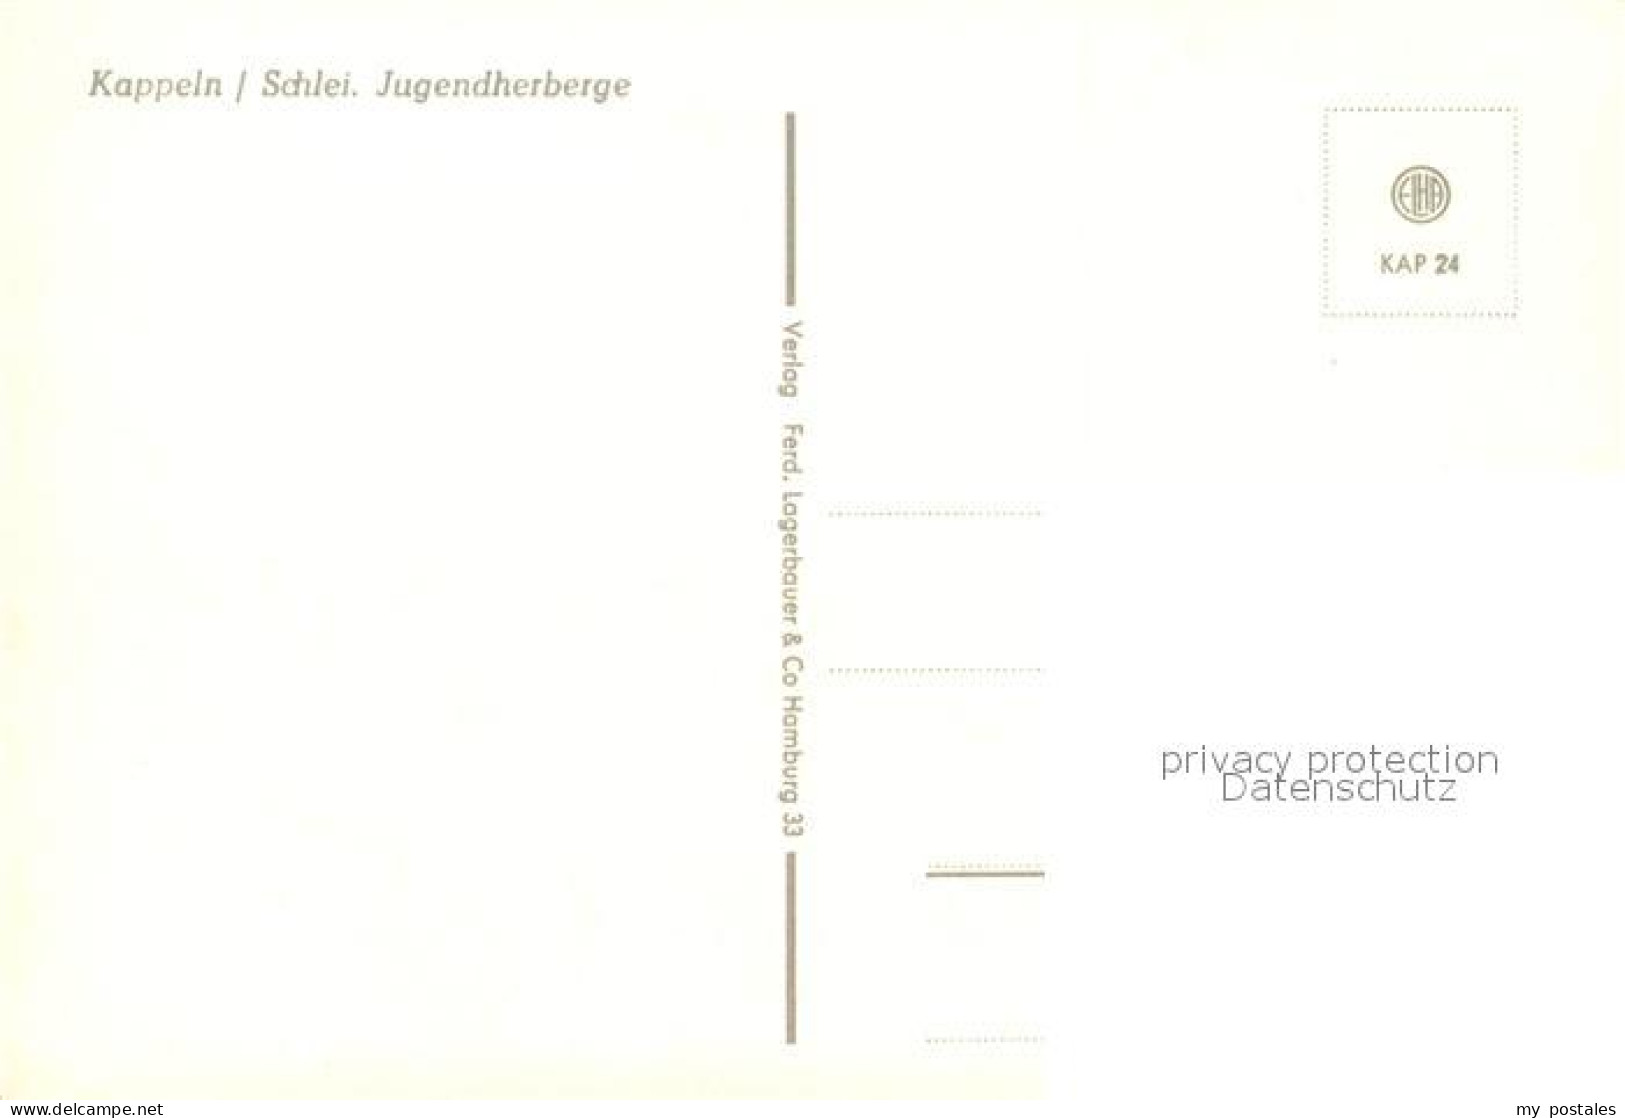 73326492 Kappeln Schlei Jugendherberge Kappeln Schlei - Kappeln / Schlei